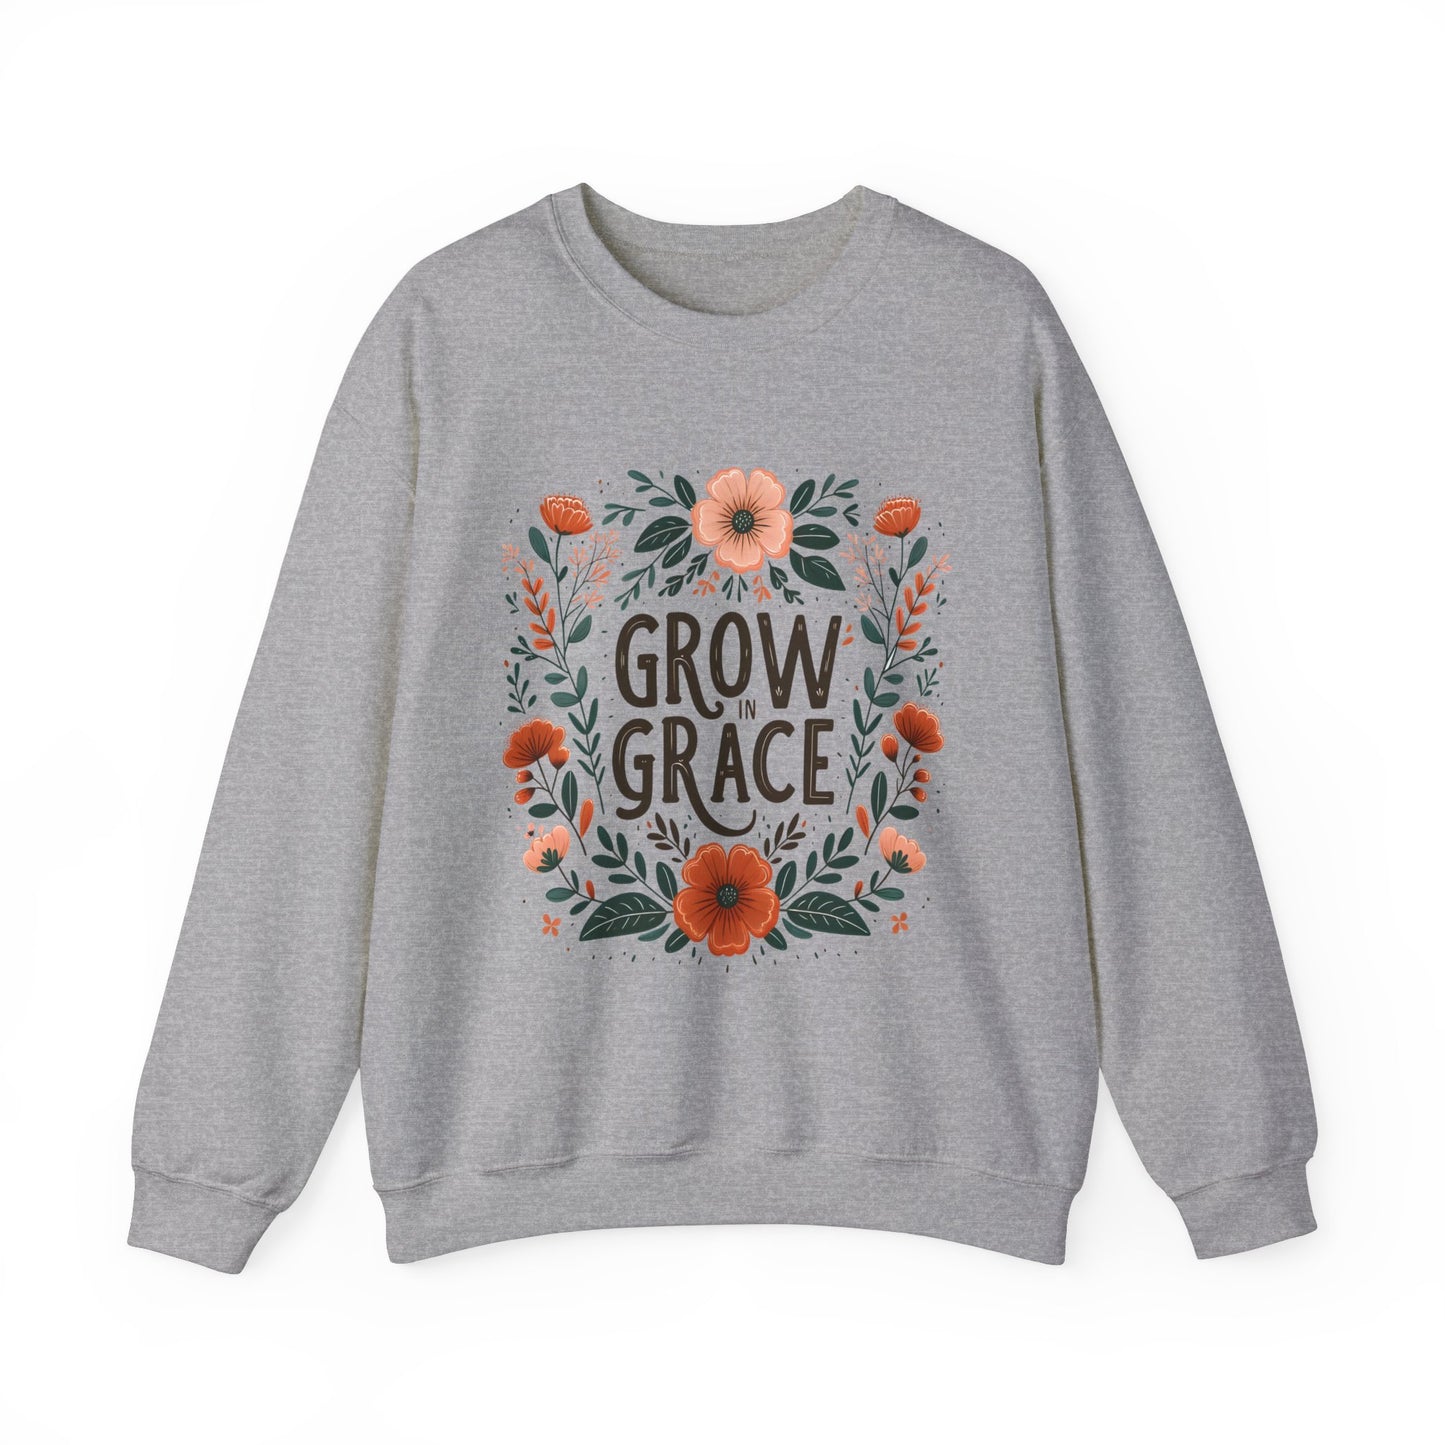 Grow in Grace Women's Easter Sweatshirt